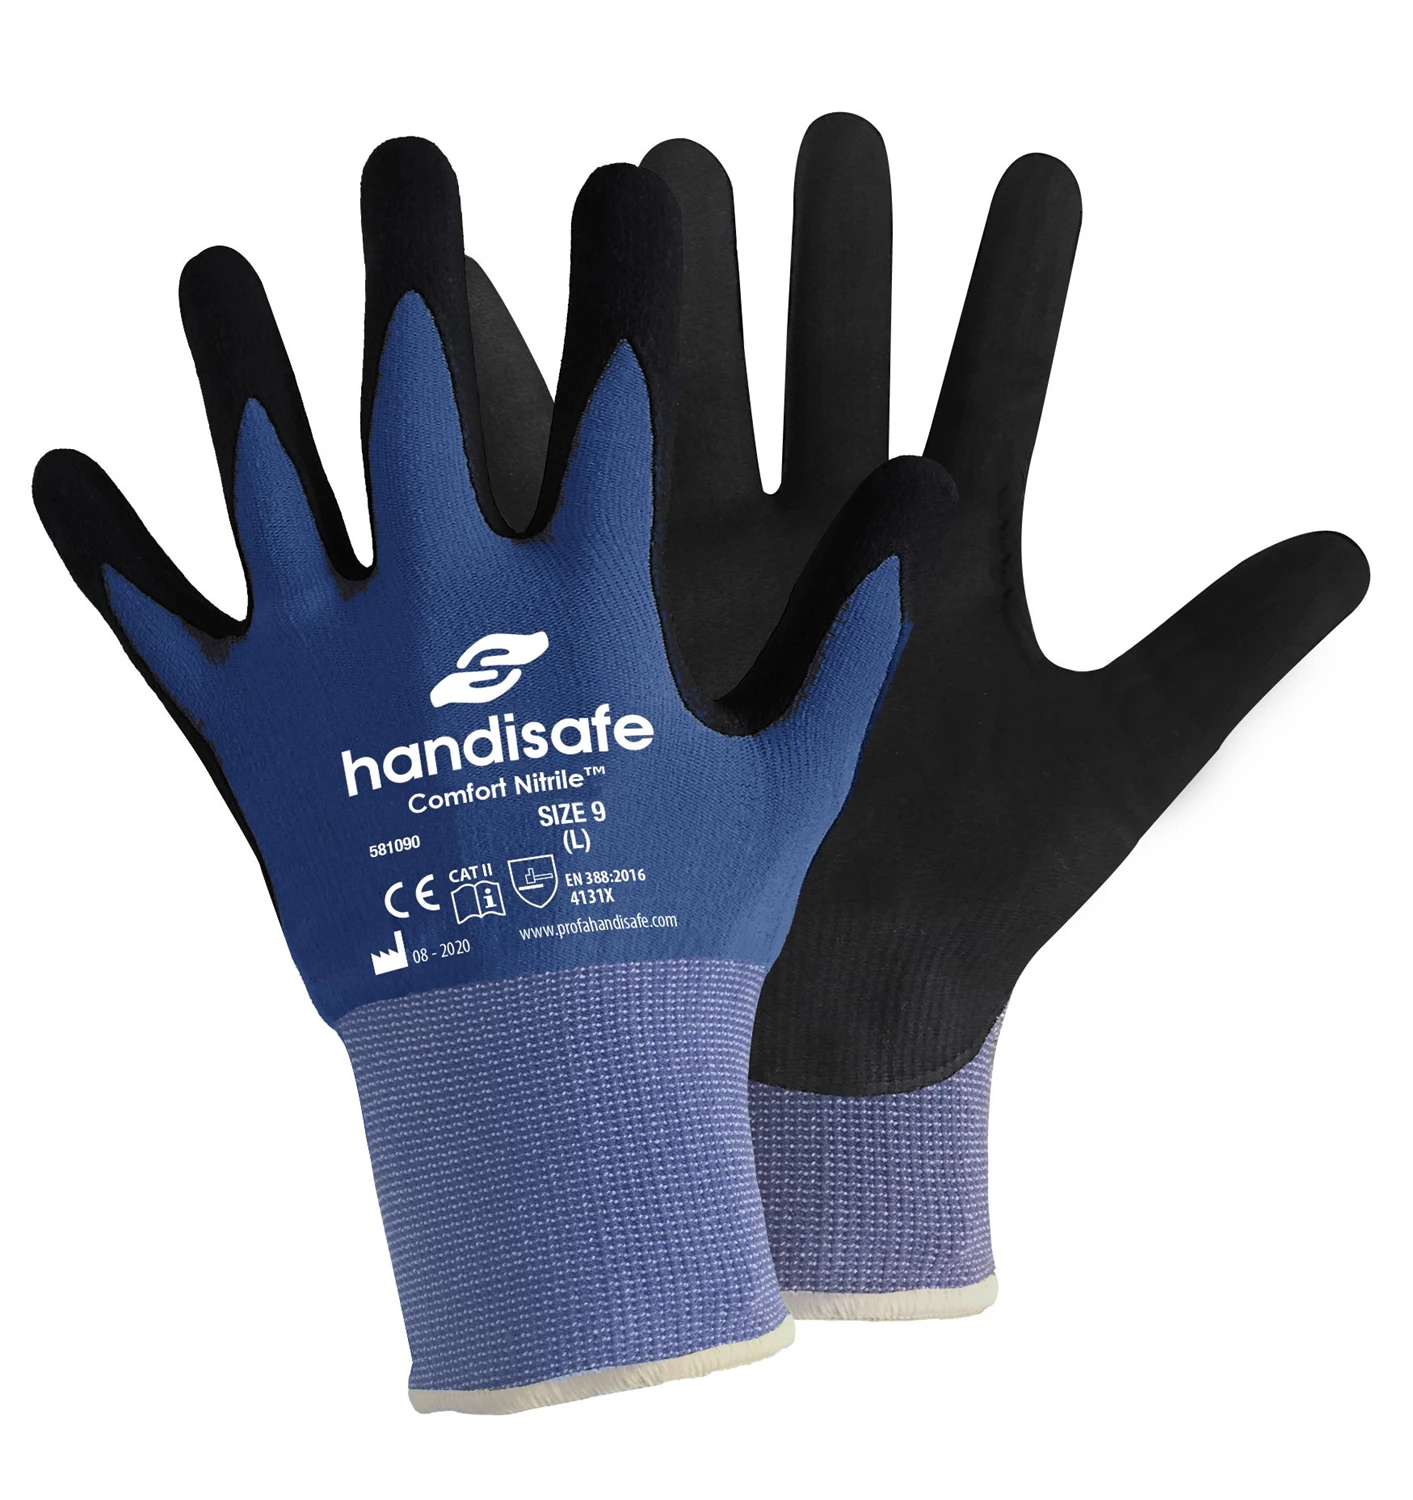 Handske Comfort Nitrile Blå strl 7/S 12par